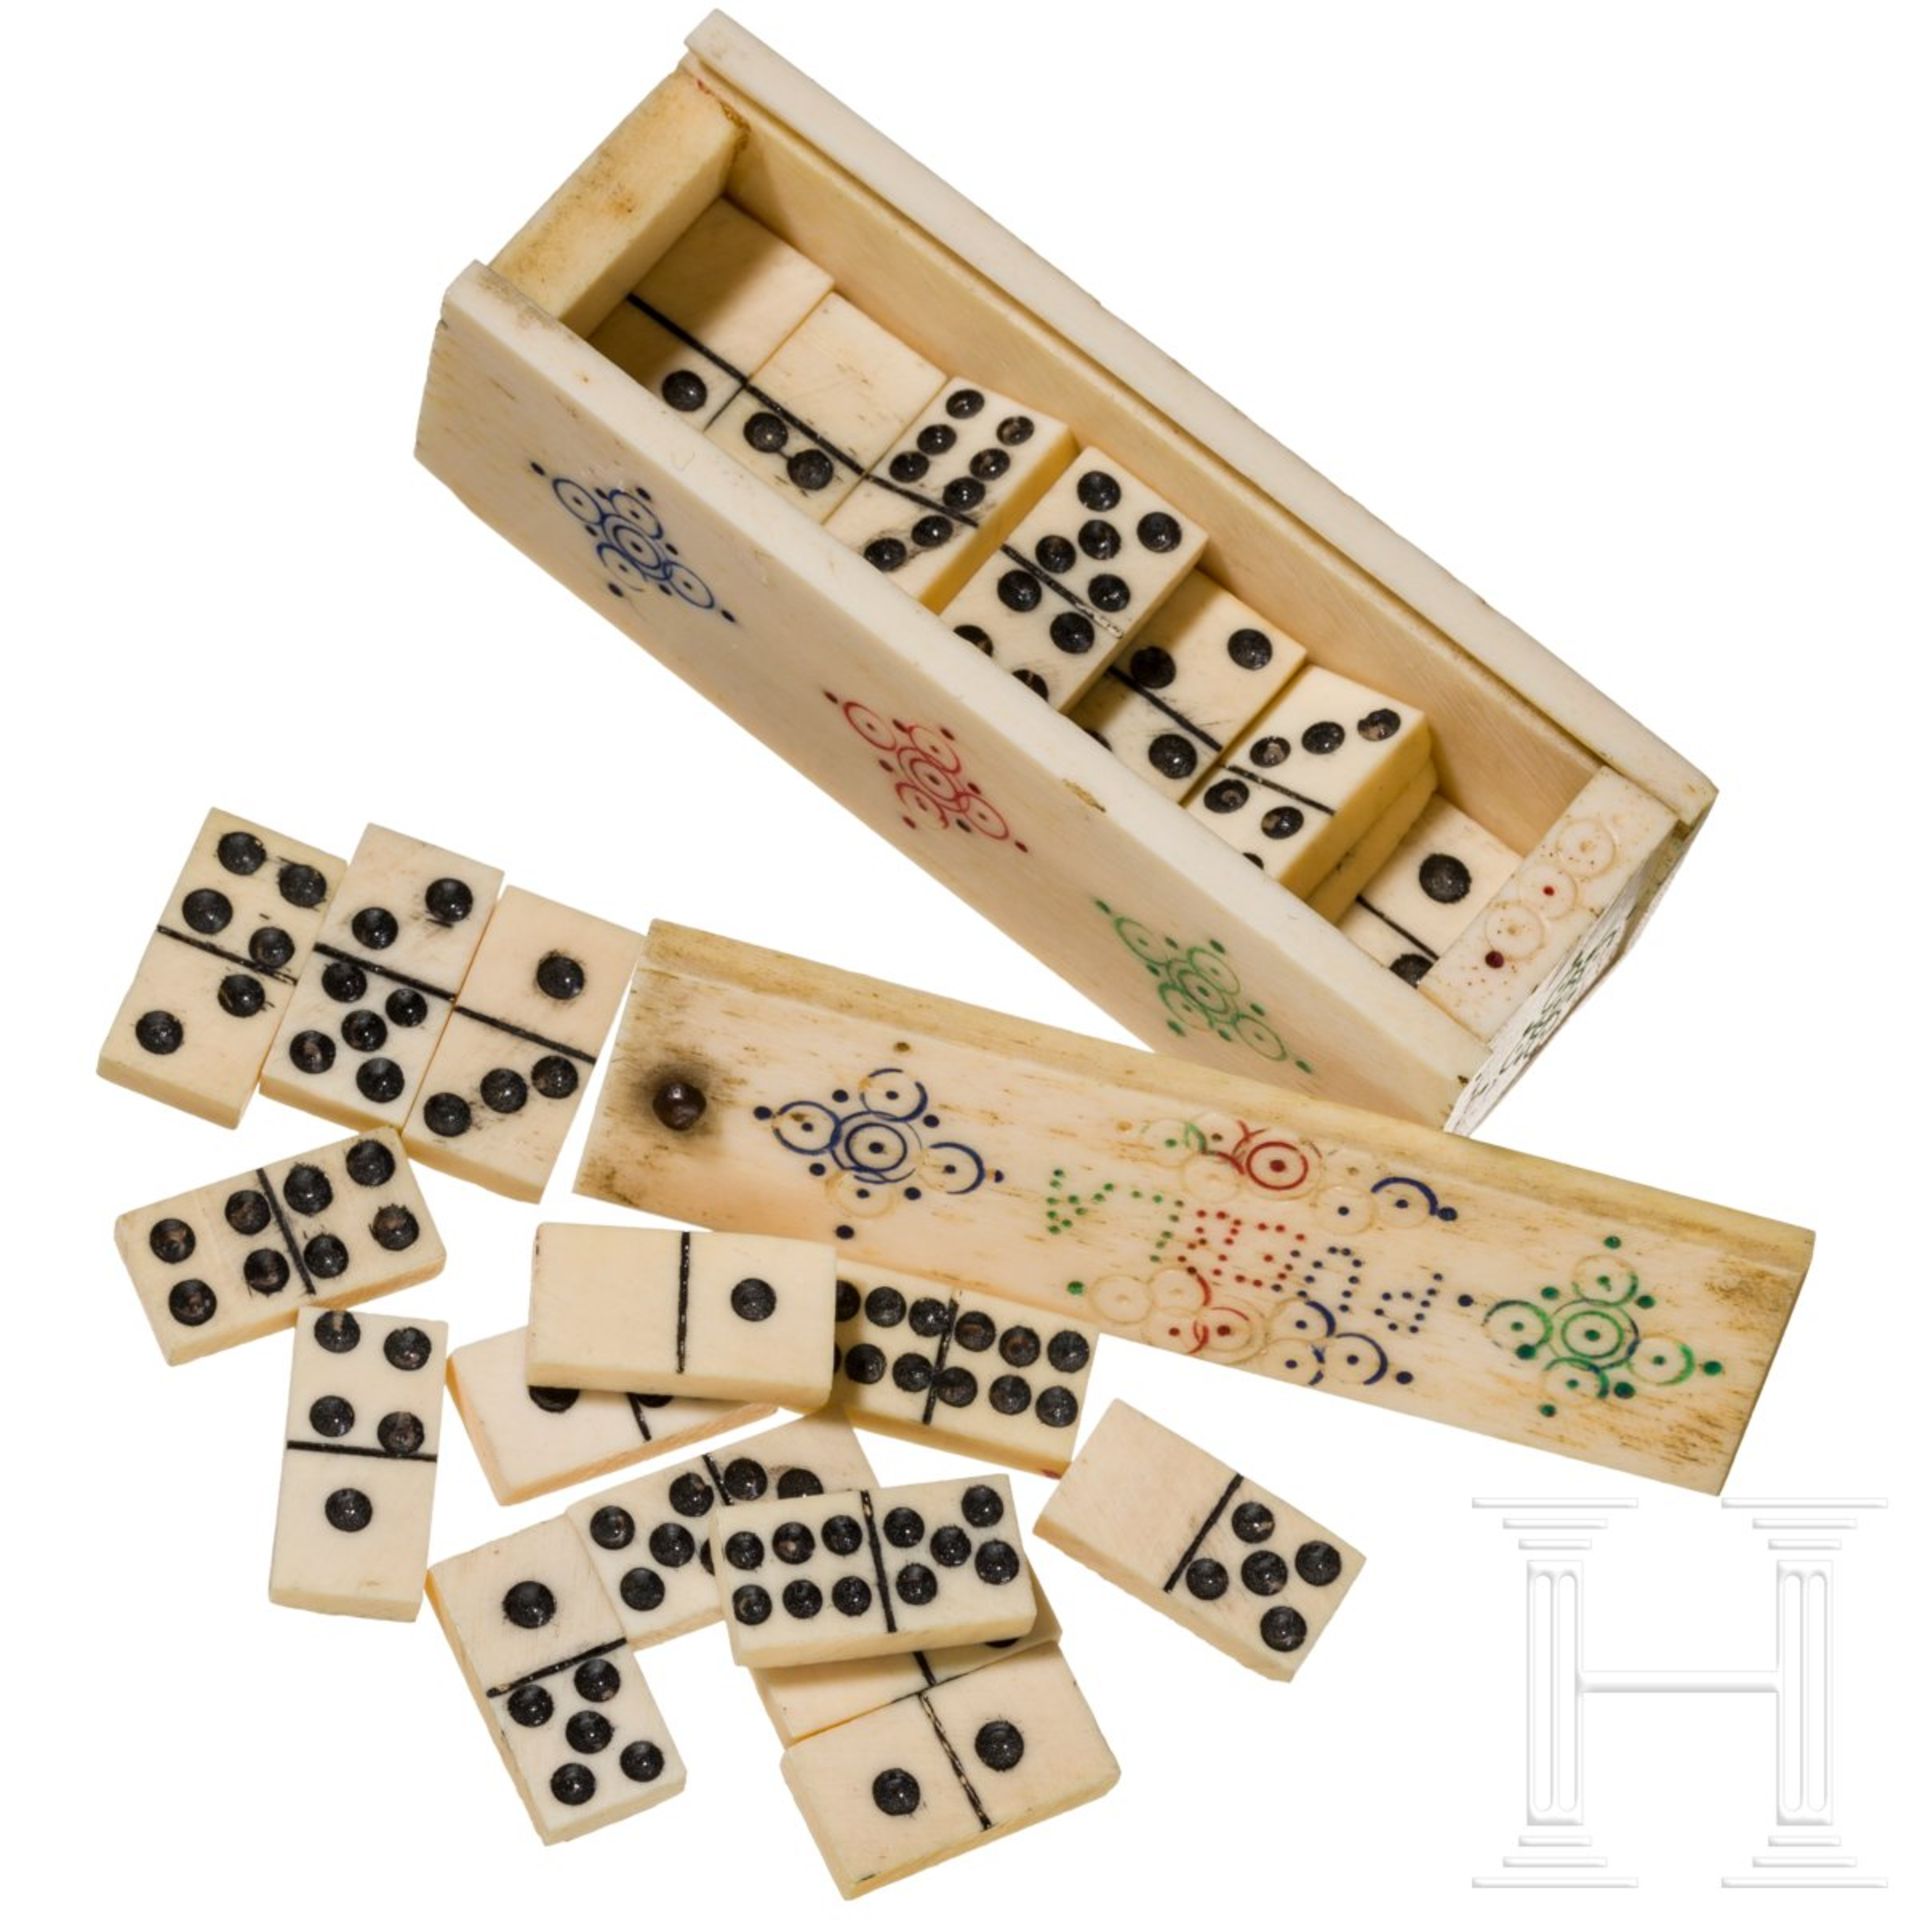 Miniatur-Domino-Spiel, wohl Kolonial-Spanien, 19. Jhdt.Kleines quaderförmiges, aufschiebbares